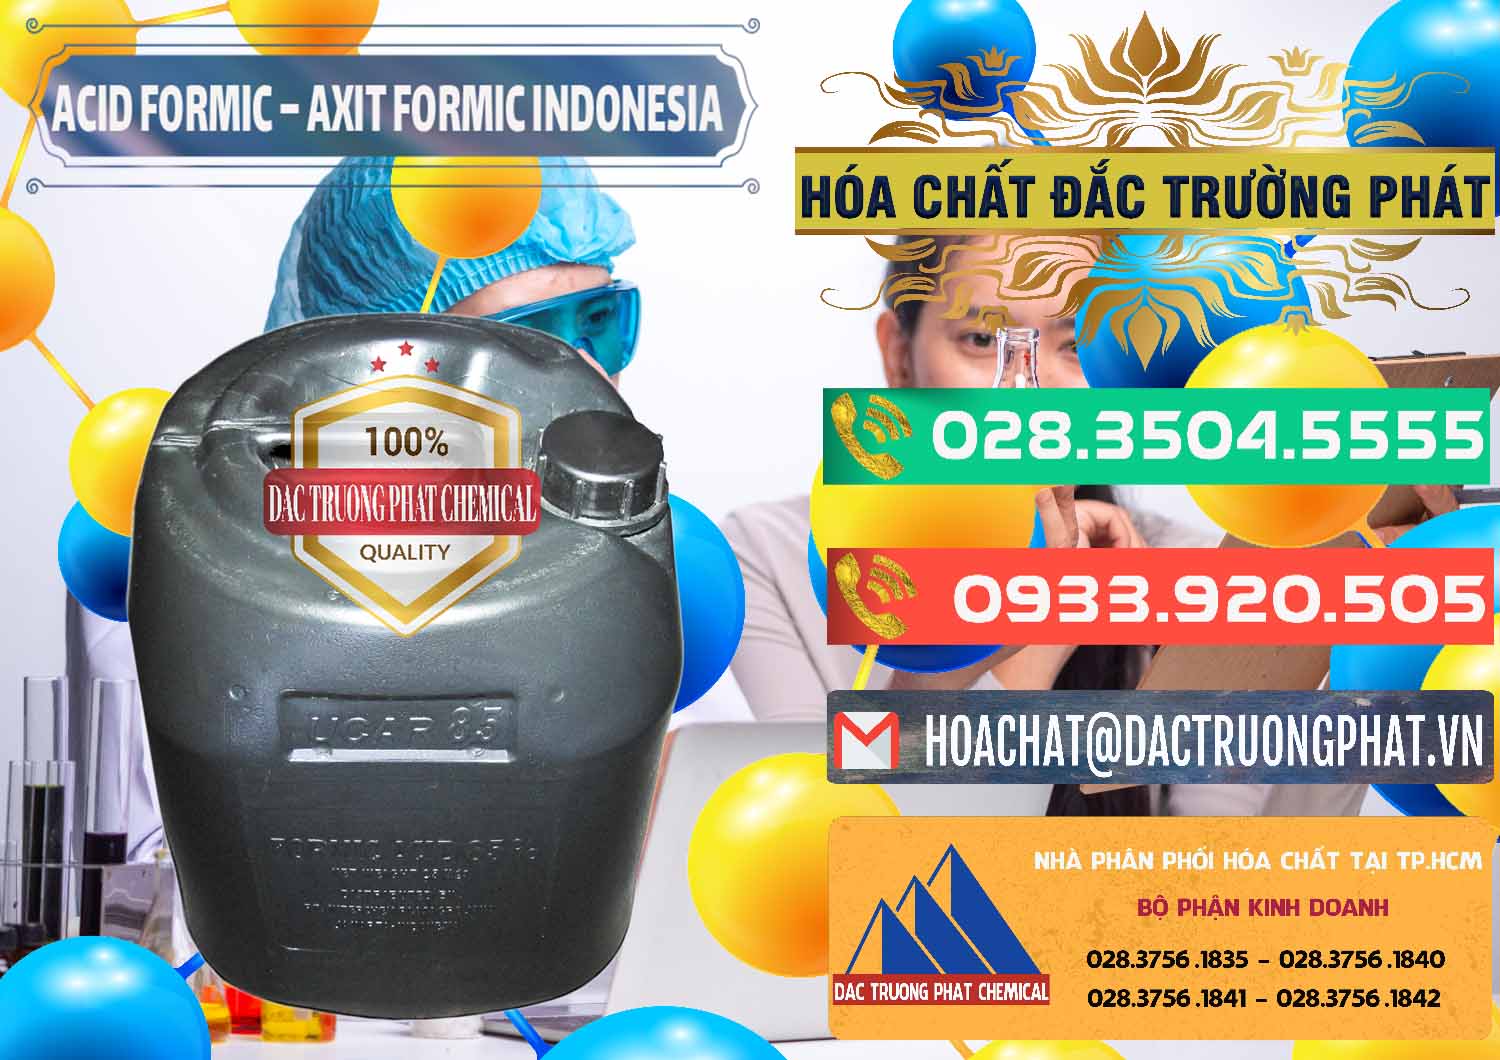 Nơi kinh doanh _ bán Acid Formic - Axit Formic Indonesia - 0026 - Nơi chuyên kinh doanh & phân phối hóa chất tại TP.HCM - congtyhoachat.com.vn